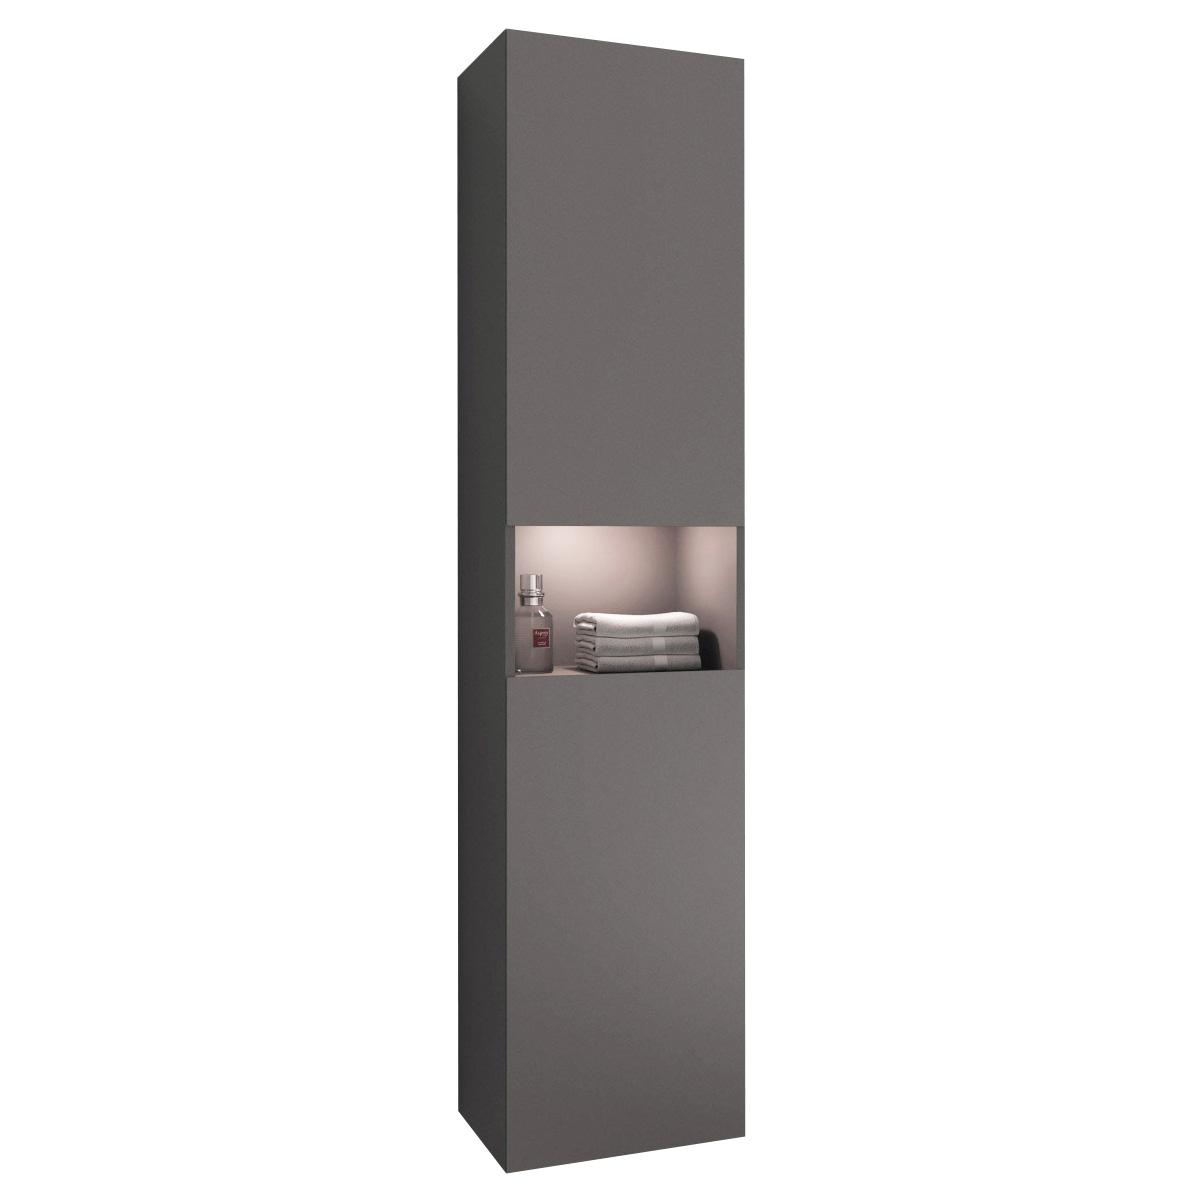 Шкаф для ванной Keuco Stageline 32831290102 инокс матовый с подсветкой, цвет серый